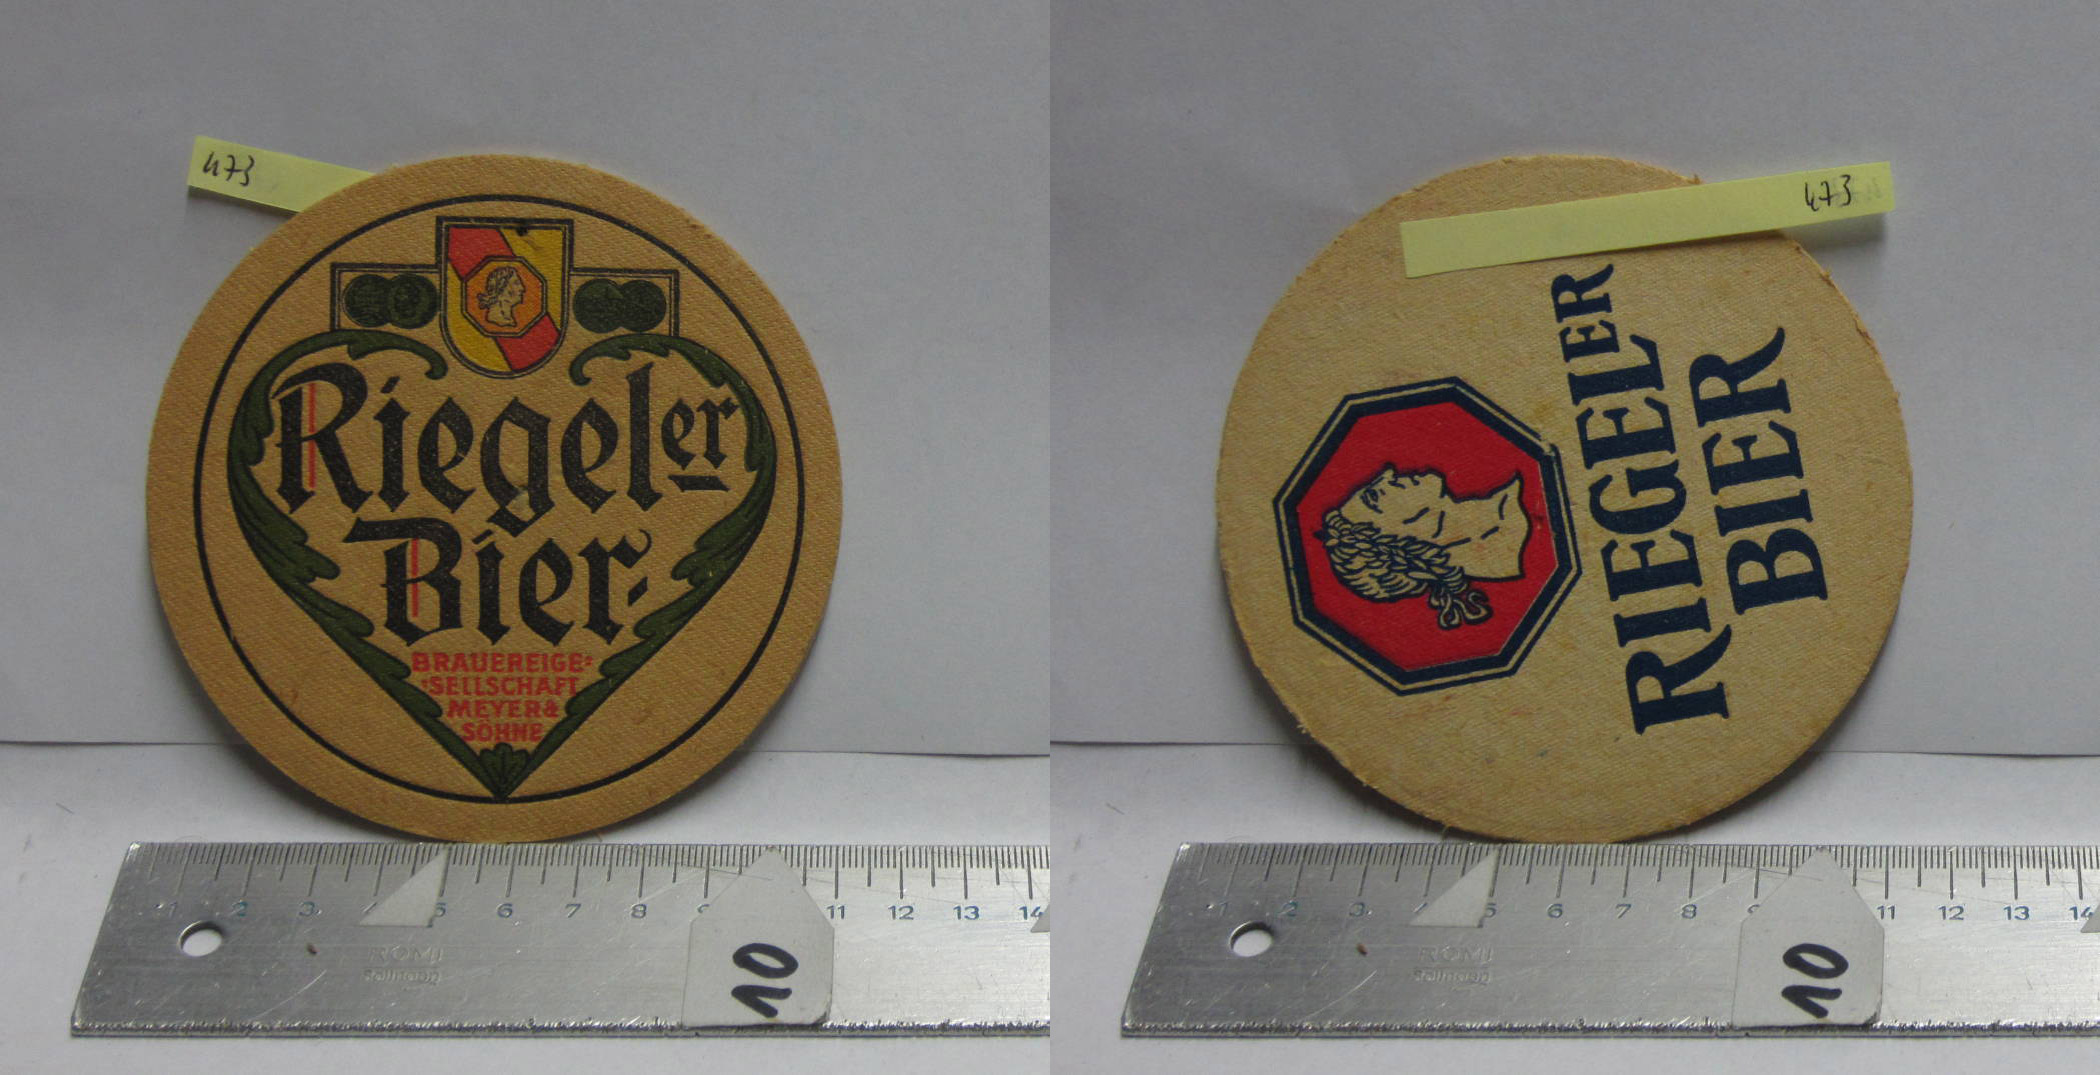 473 - Riegeler Bier